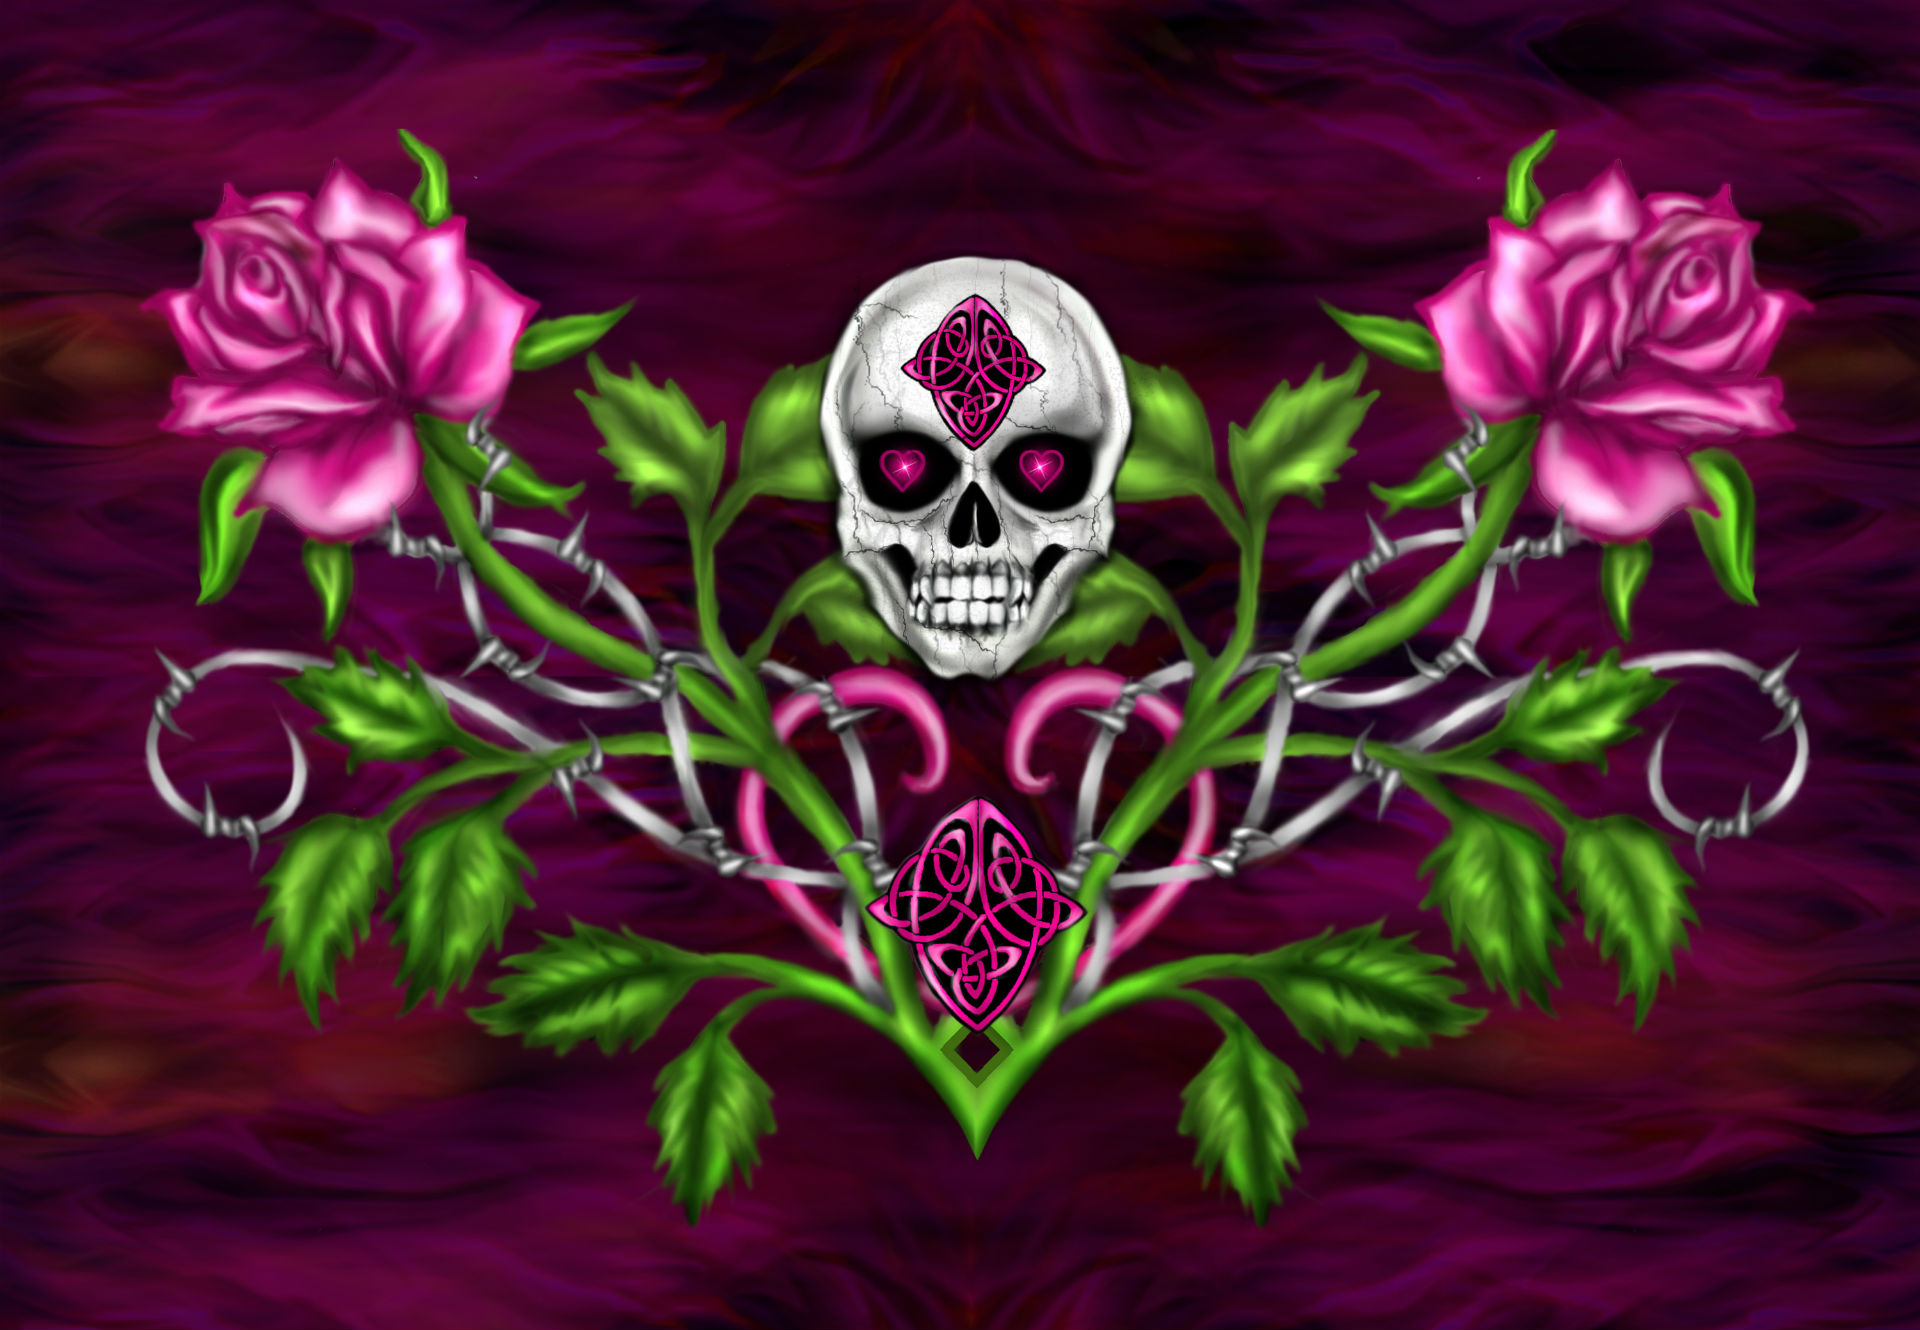 Dark Horror Gothic Skull Flowers Occult Art Wallpaper